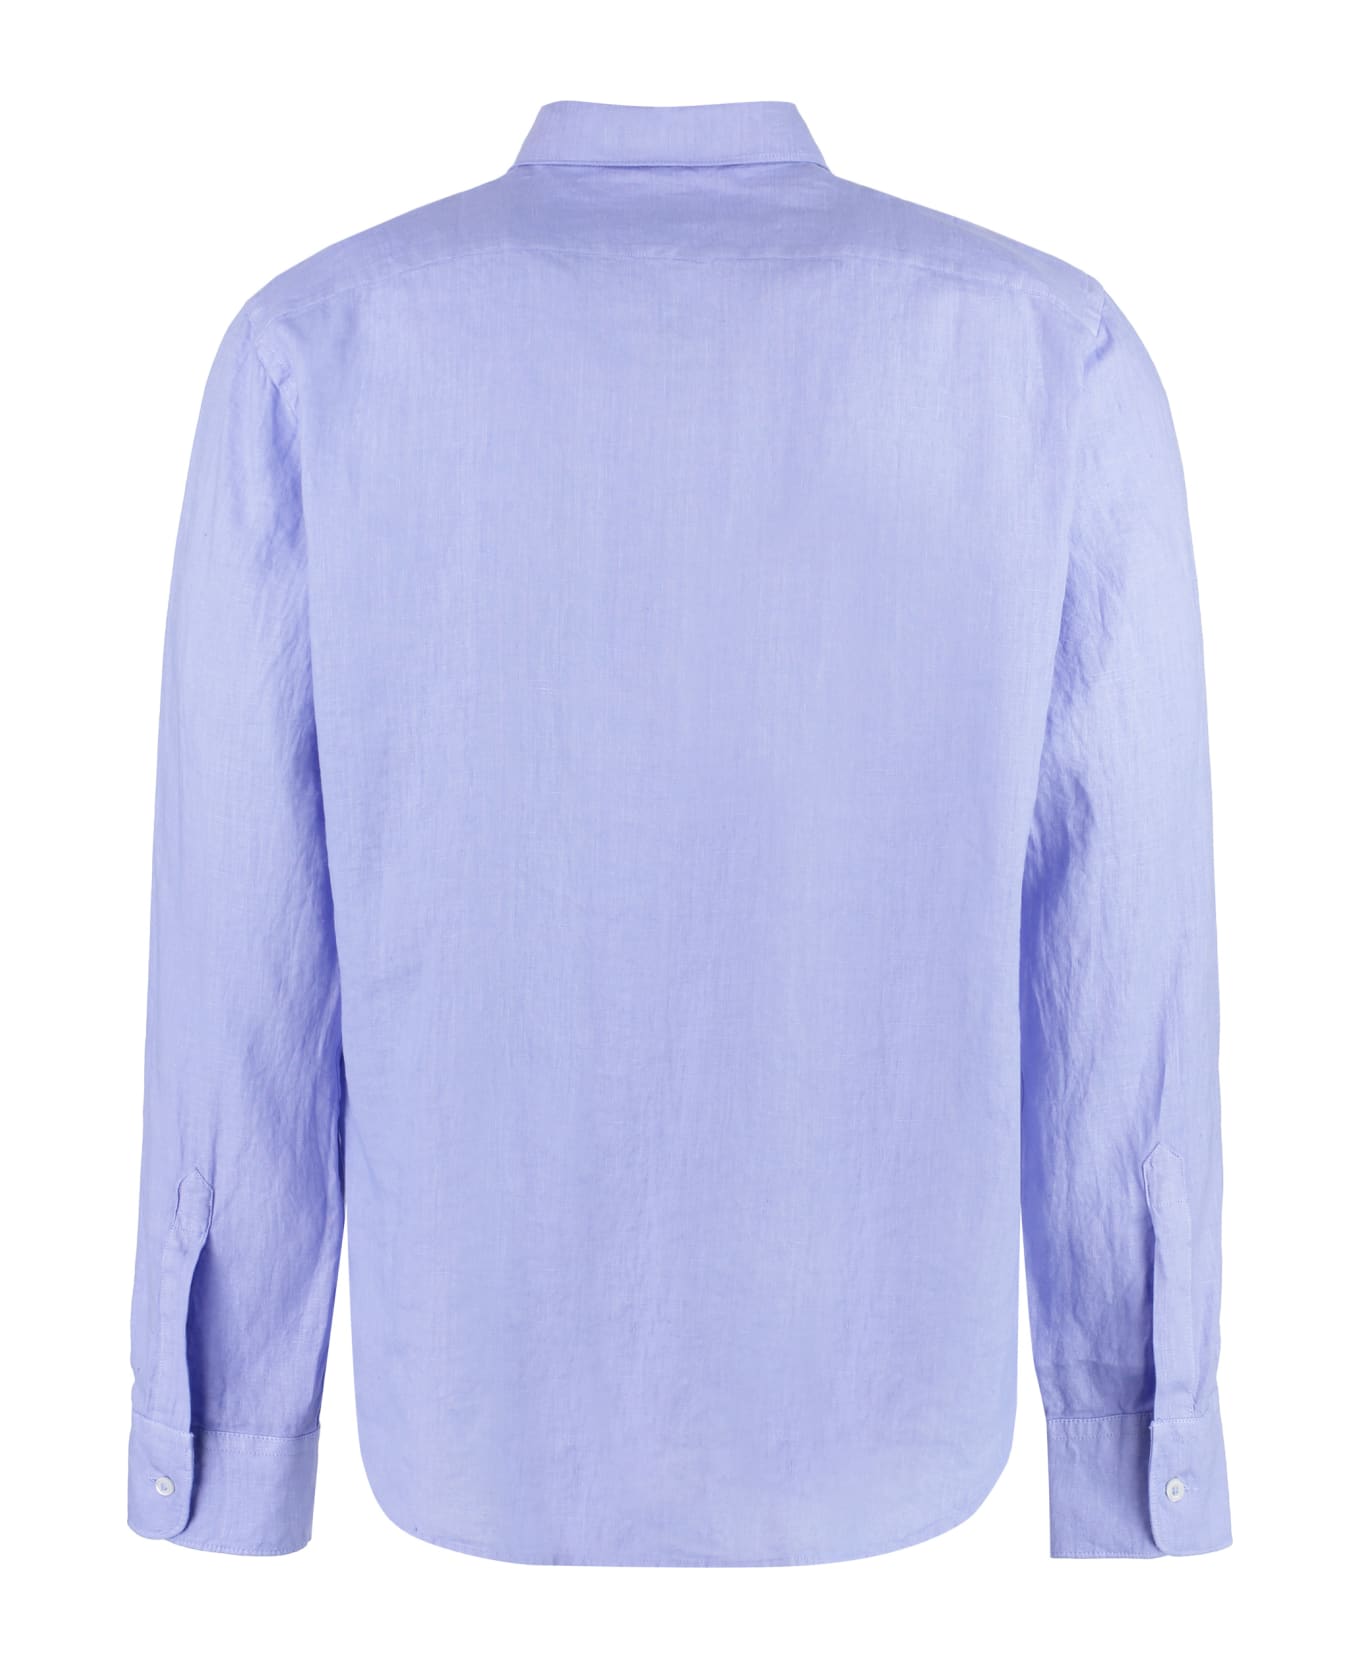 Aspesi Linen Shirt - Light Blue シャツ